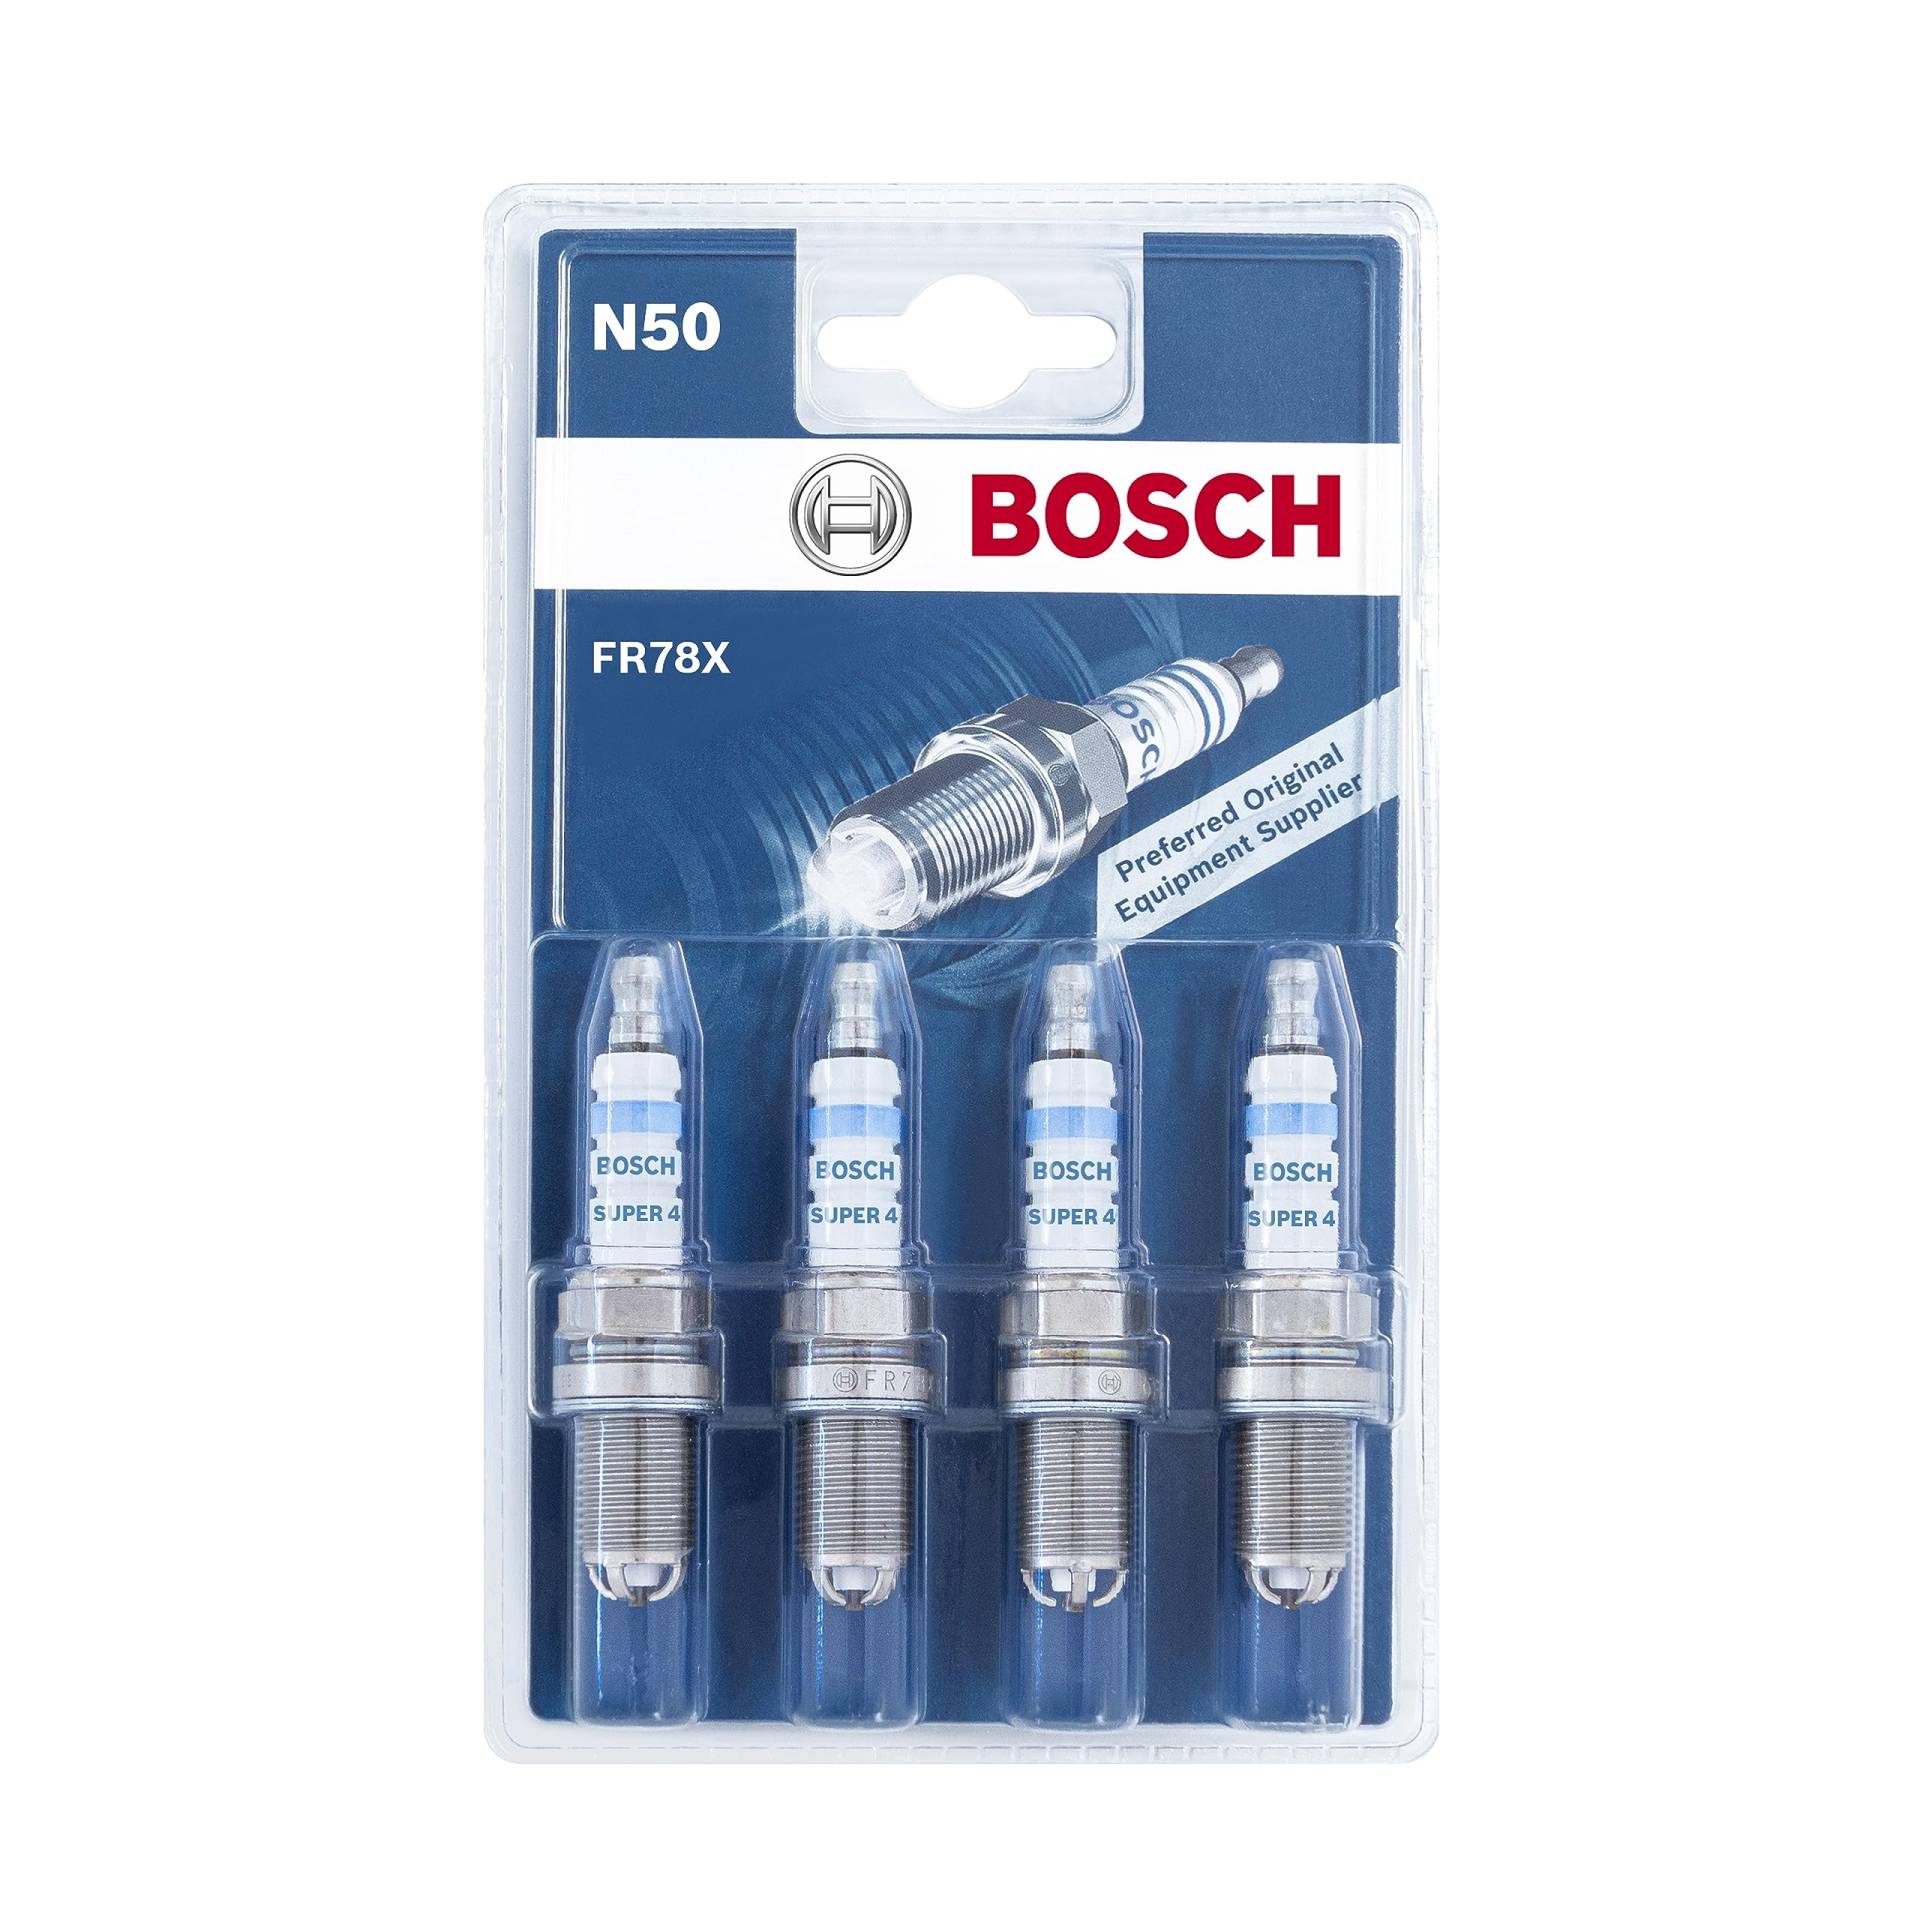 Bosch FR78X (510/N50) - Zündkerzen Super 4 - 4er Set, Nickel von Bosch Automotive